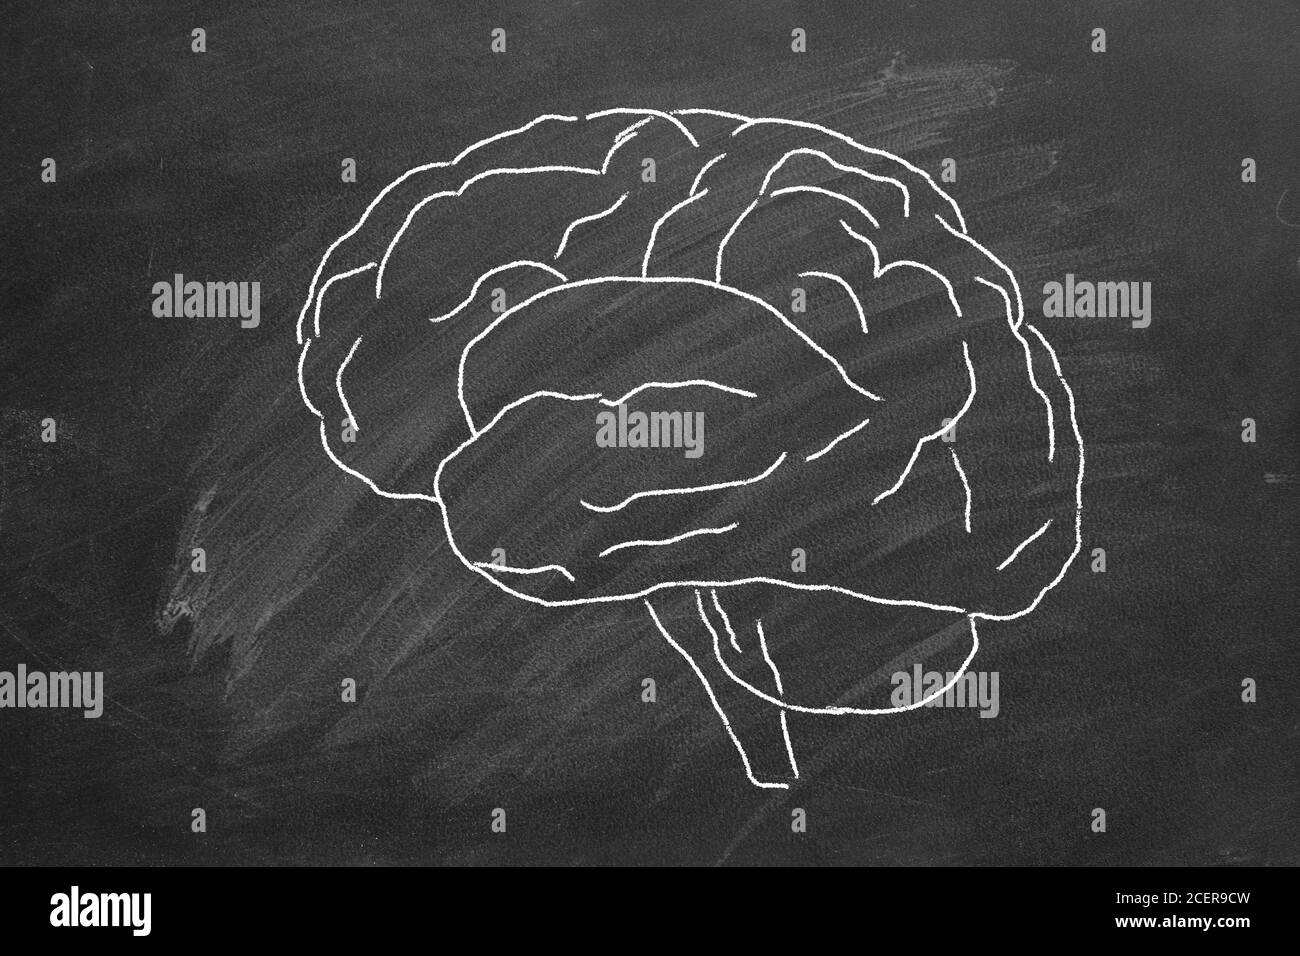 Gesso ha disegnato il cervello umano su una lavagna. Foto Stock